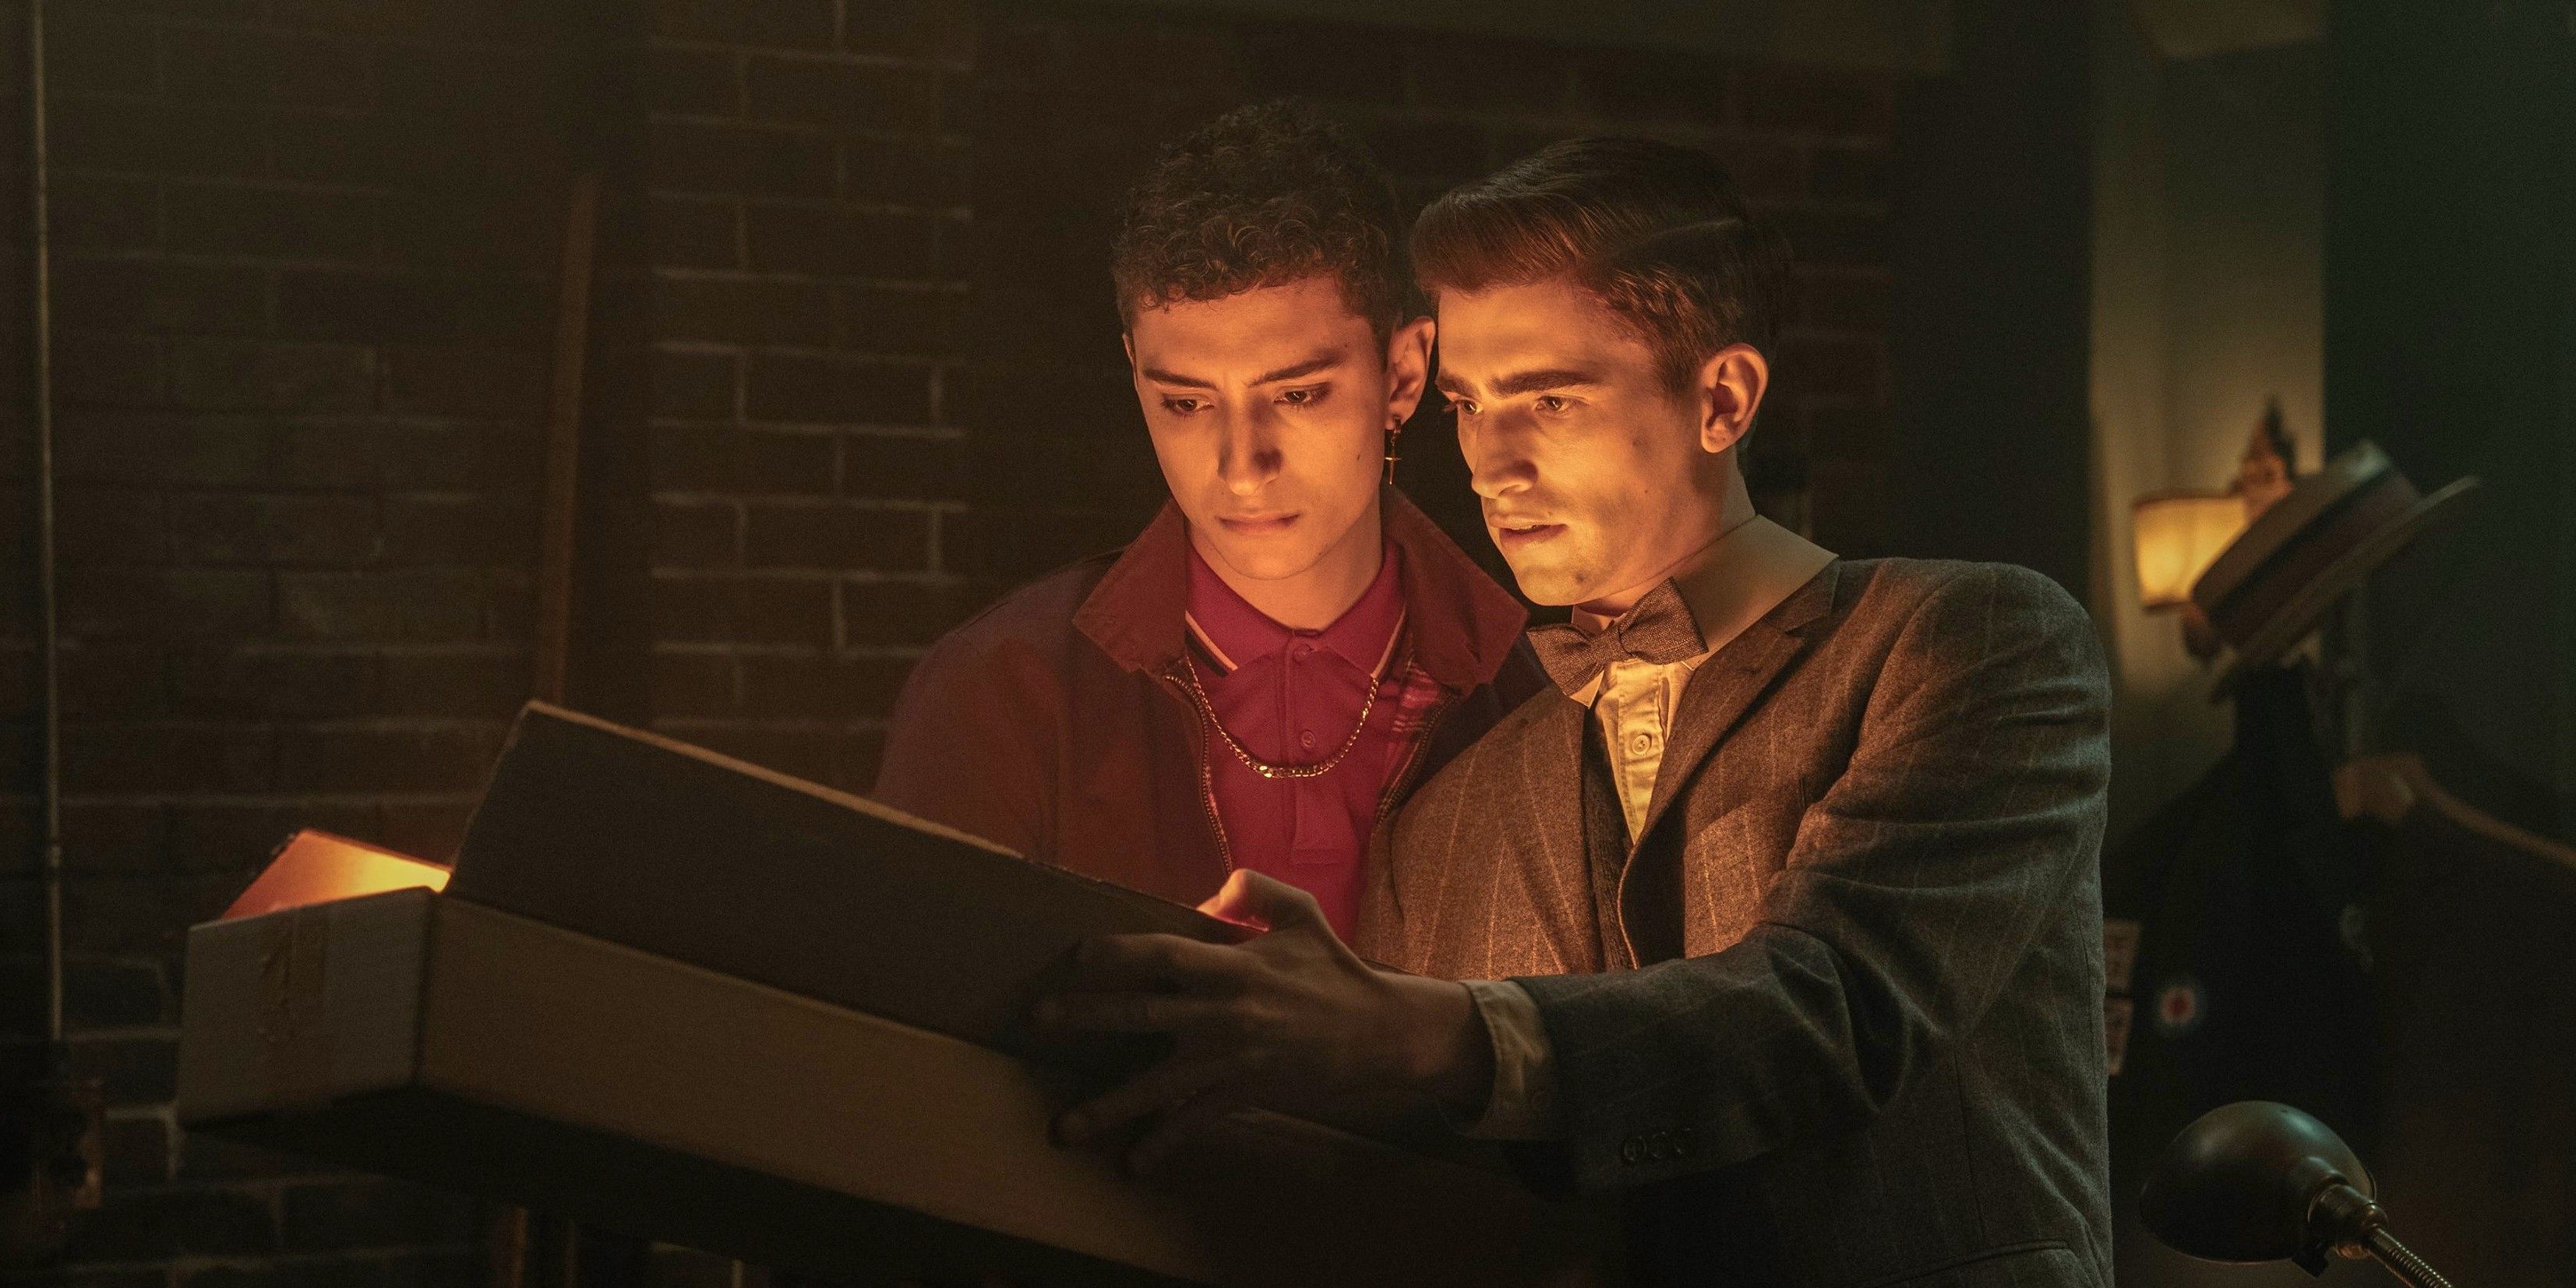 Сходство детективов «Мертвые мальчики» с отмененным шоу раскрывает большую проблему Netflix